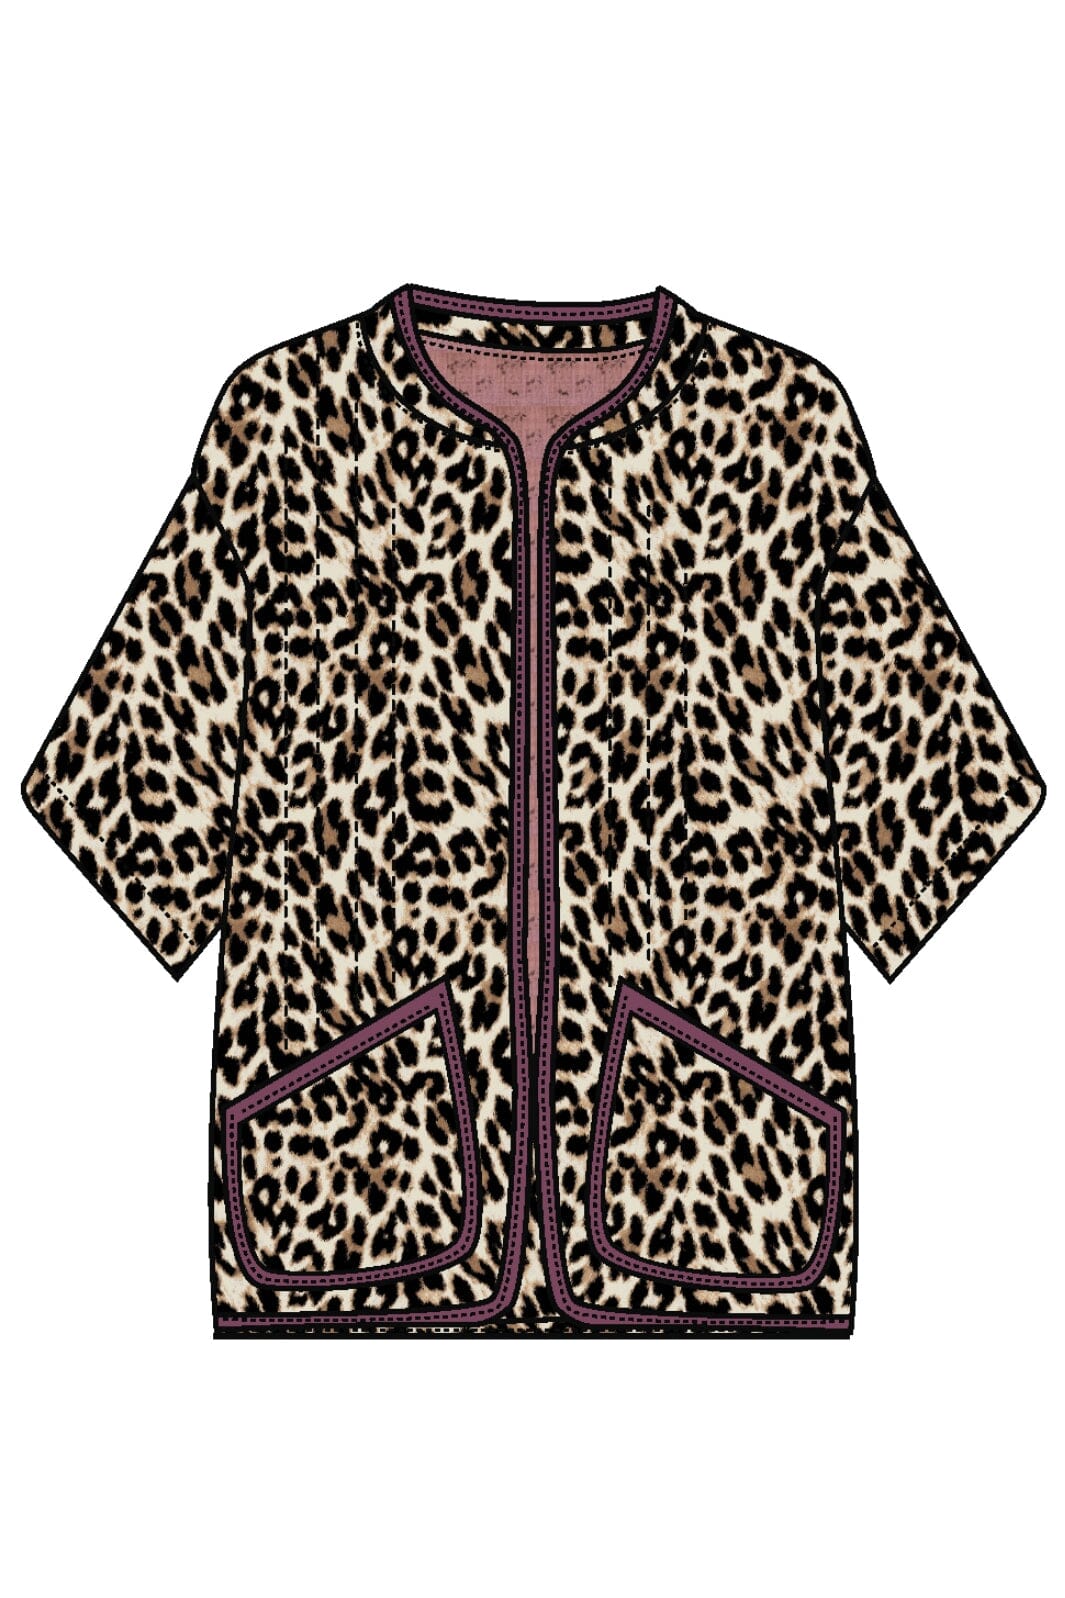 Forudbestilling - Lollys Laundry - Lulull Jacket 3/4 - 72 Leopard Print Jakker 